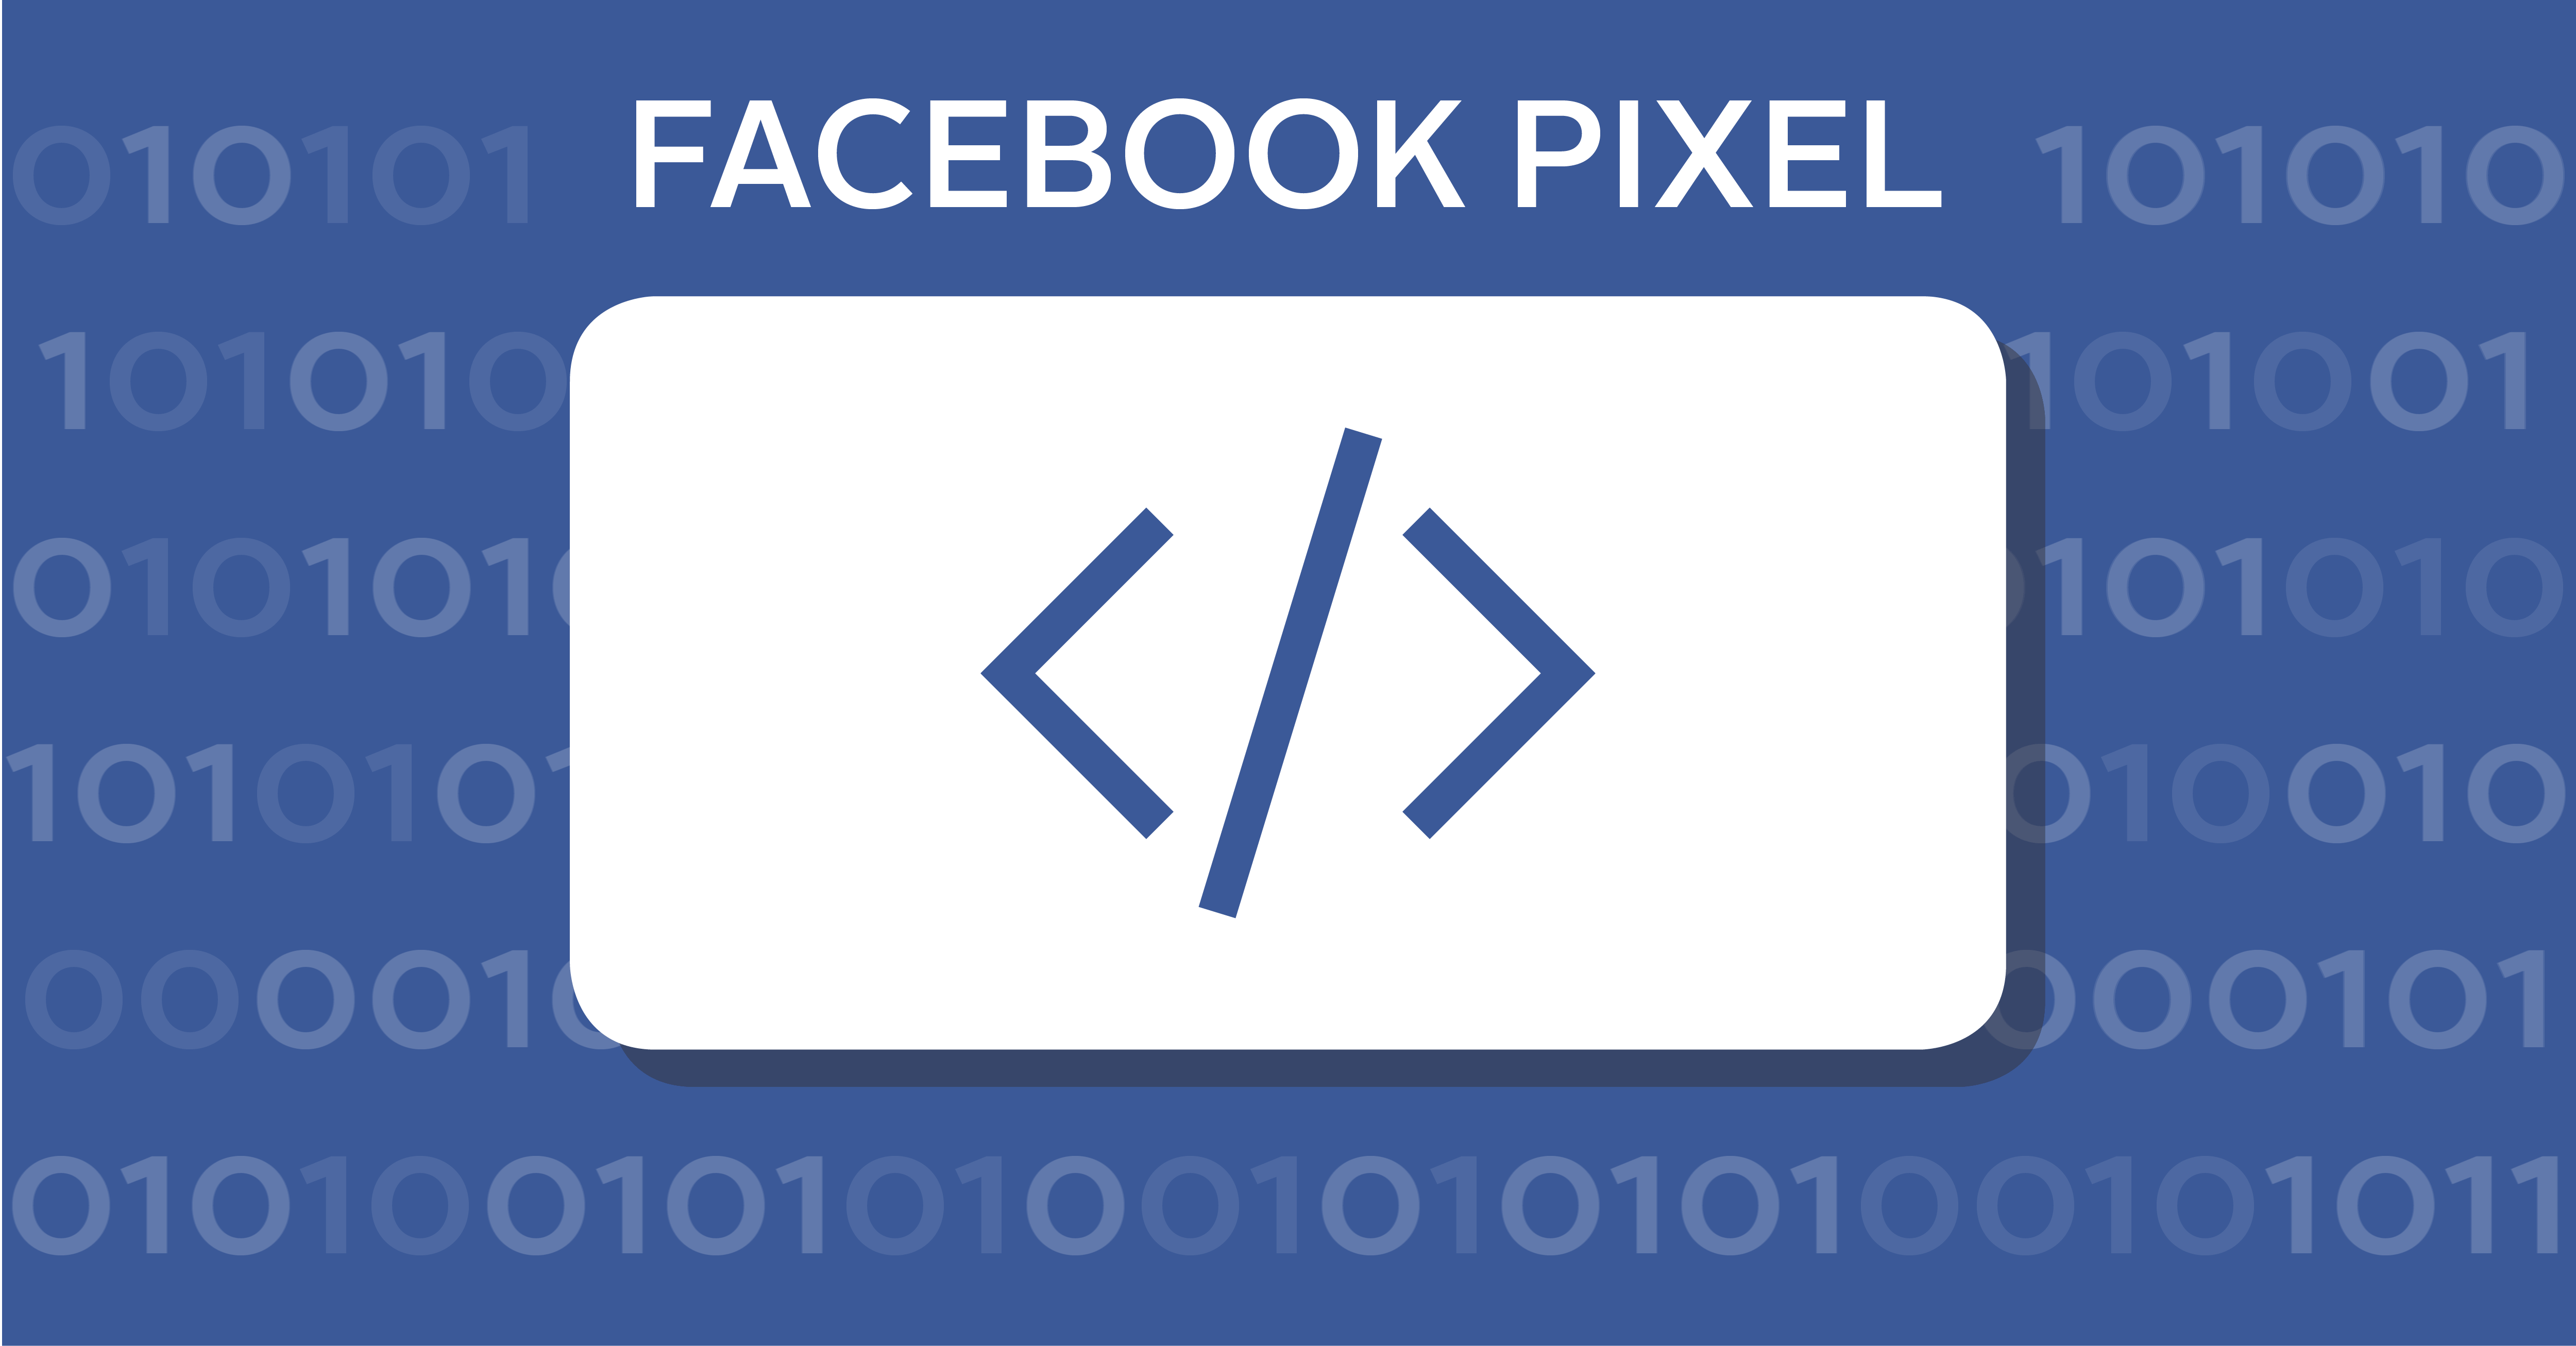 Facebook-Pixel-la-gi-11-đieu-can-nam-ve-Facebook-Pixel-hinh1